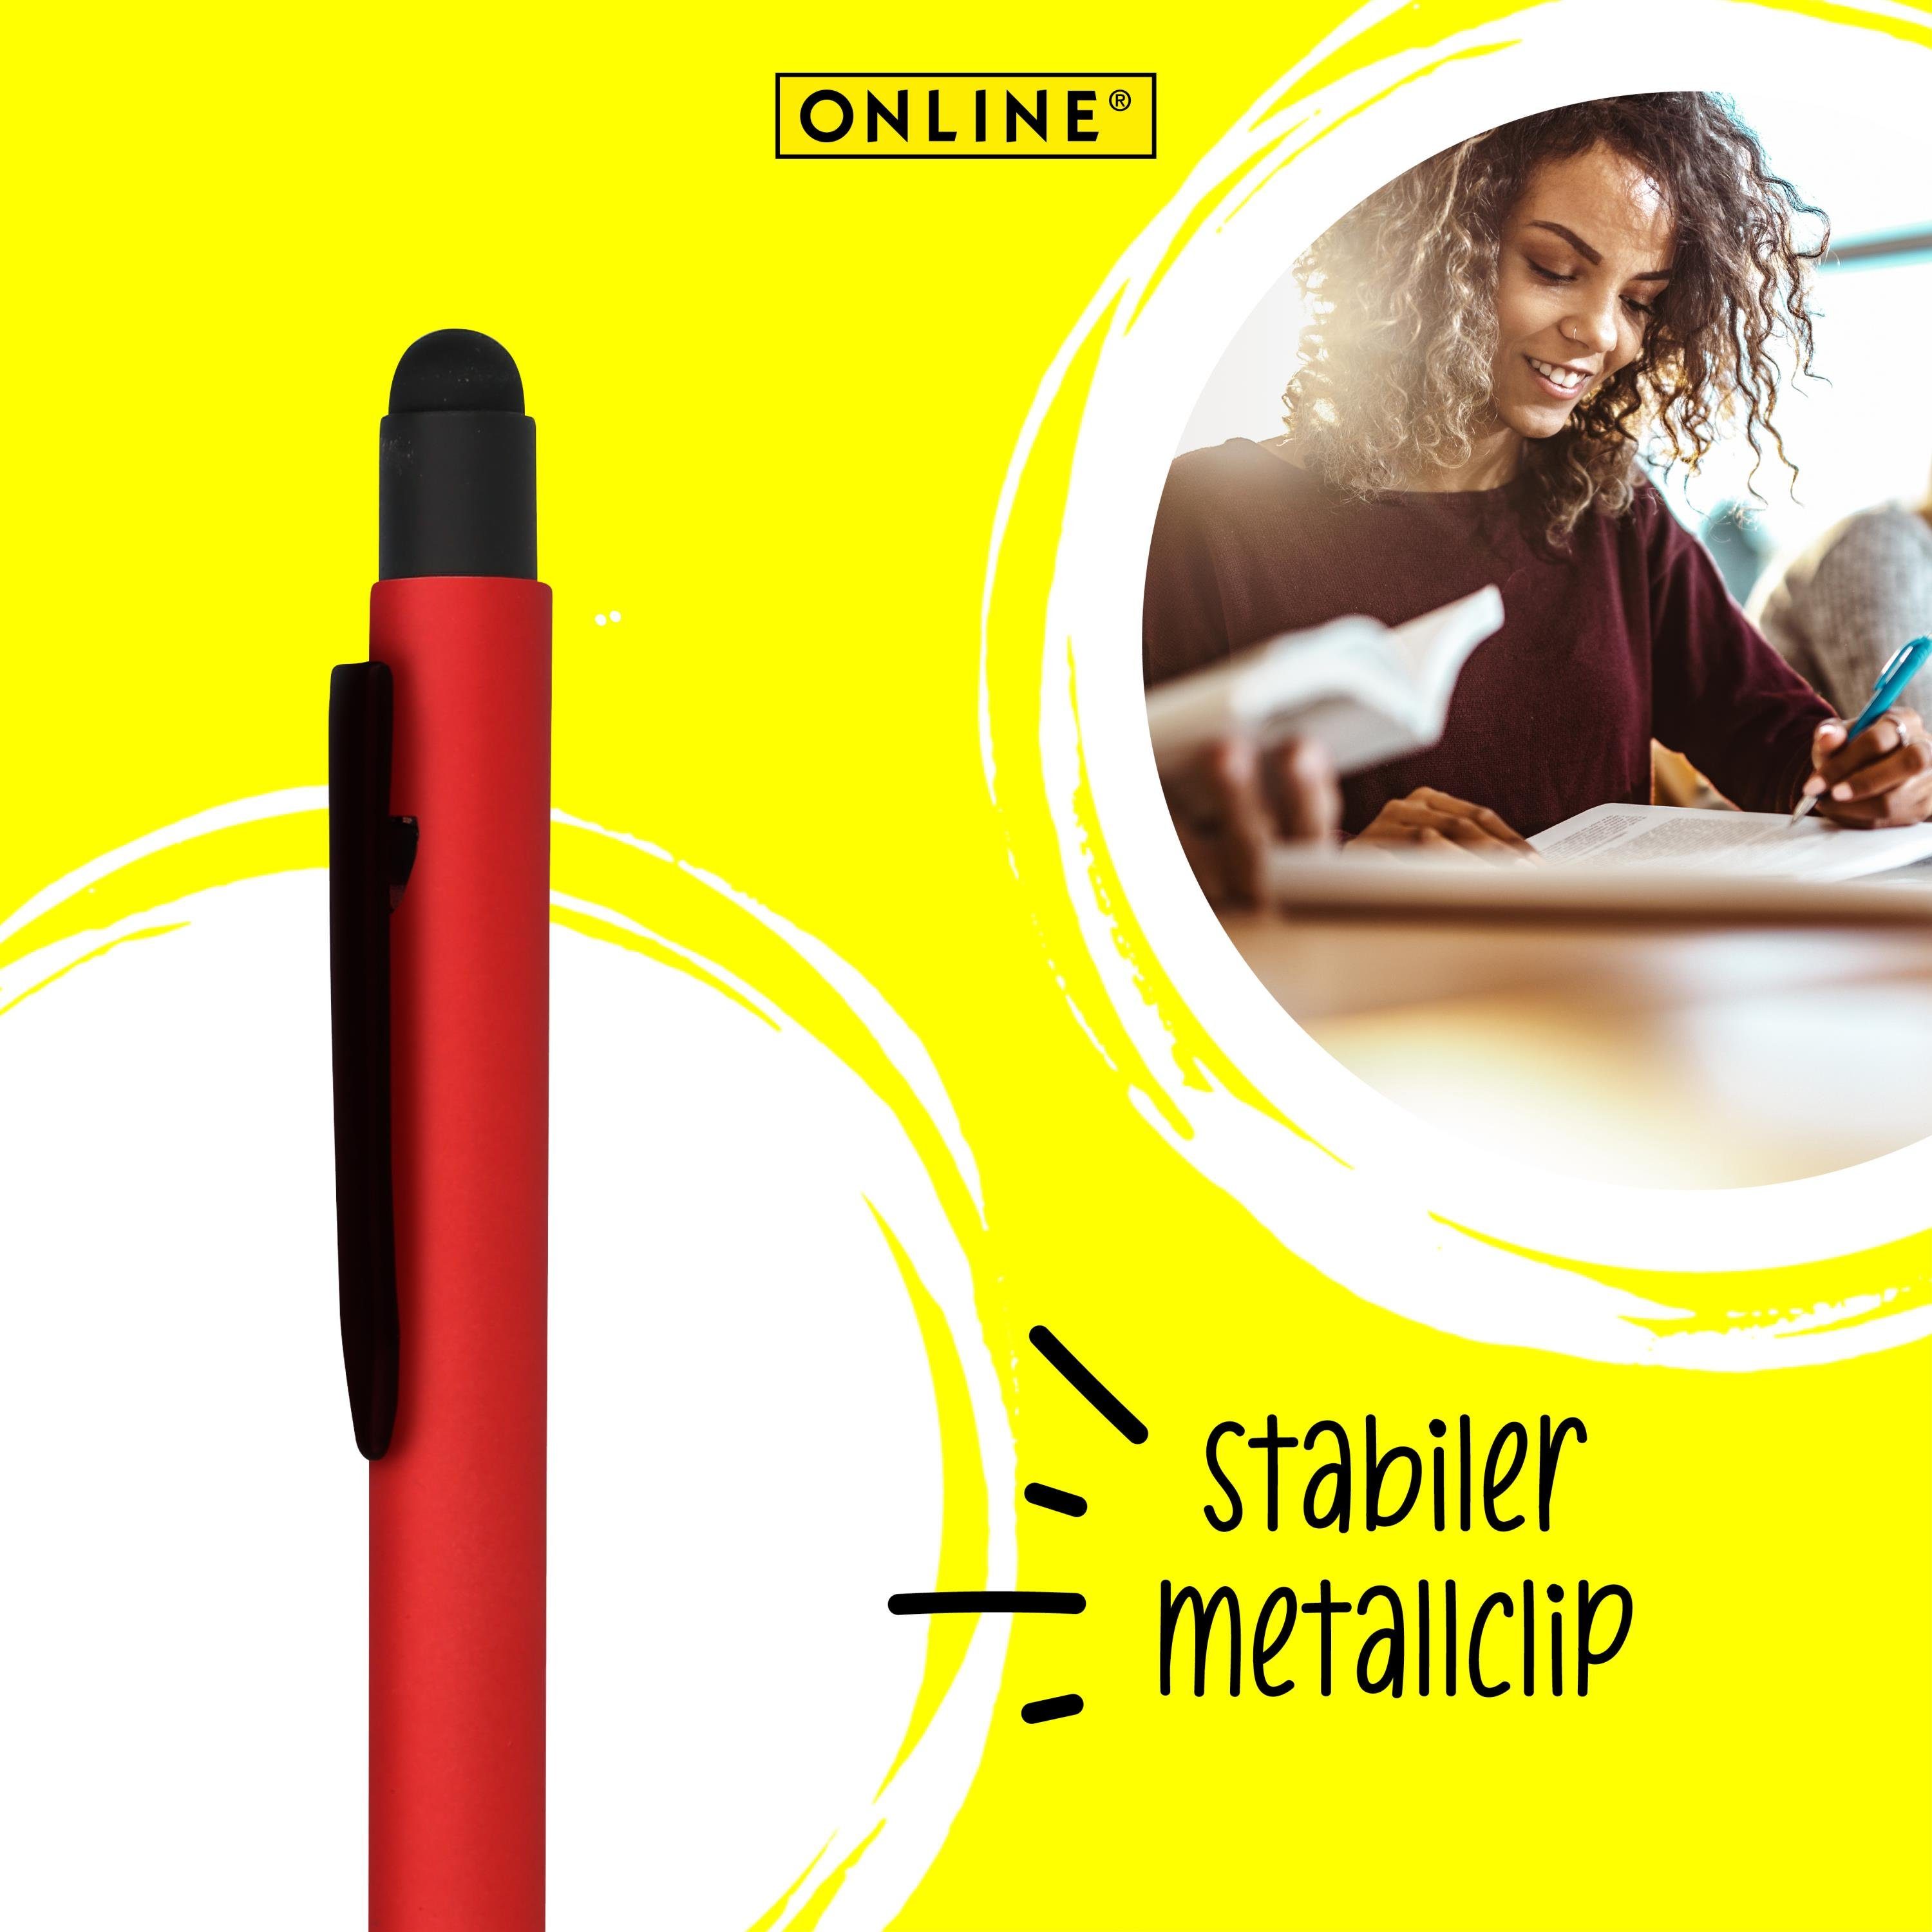 Online für Druckkugelschreiber, Multimedia-Geräte Kugelschreiber Stylus Red Alu Pen Stylus-Tip